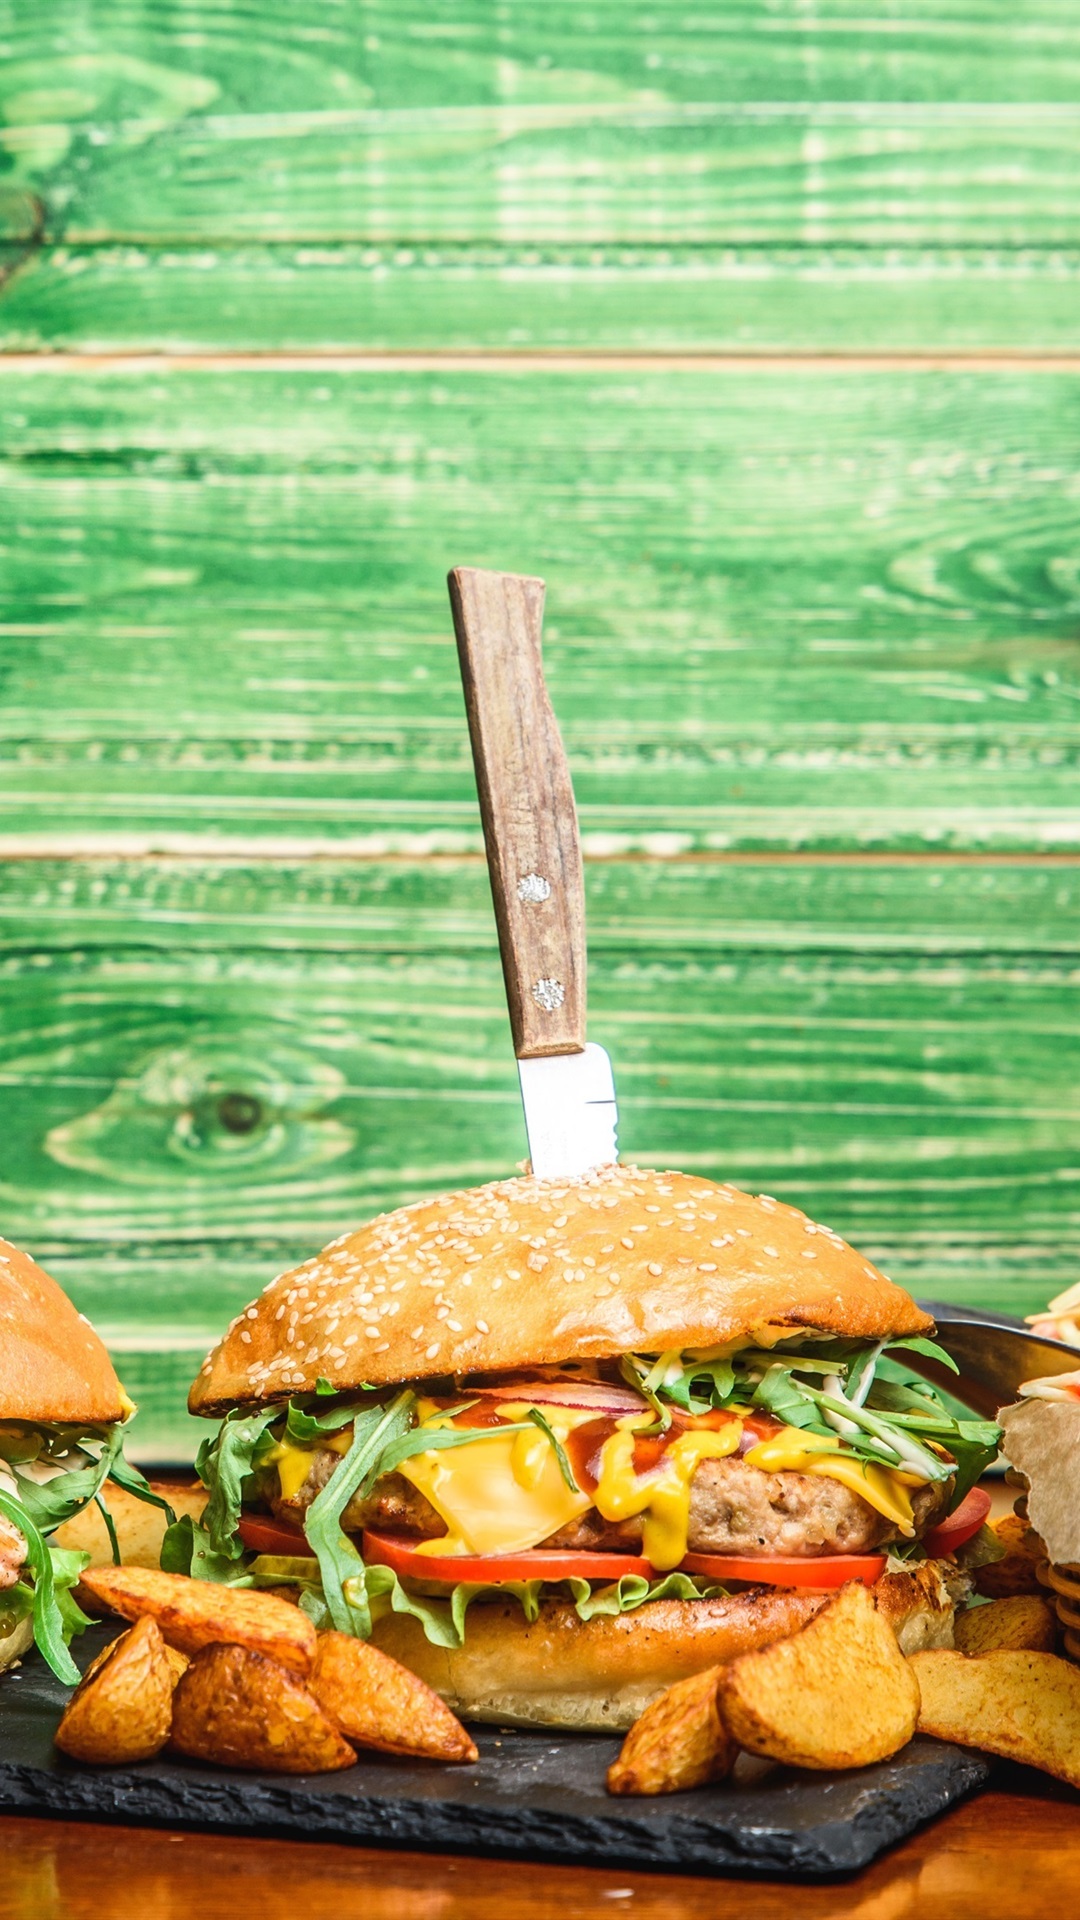 Green Burger , HD Wallpaper & Backgrounds